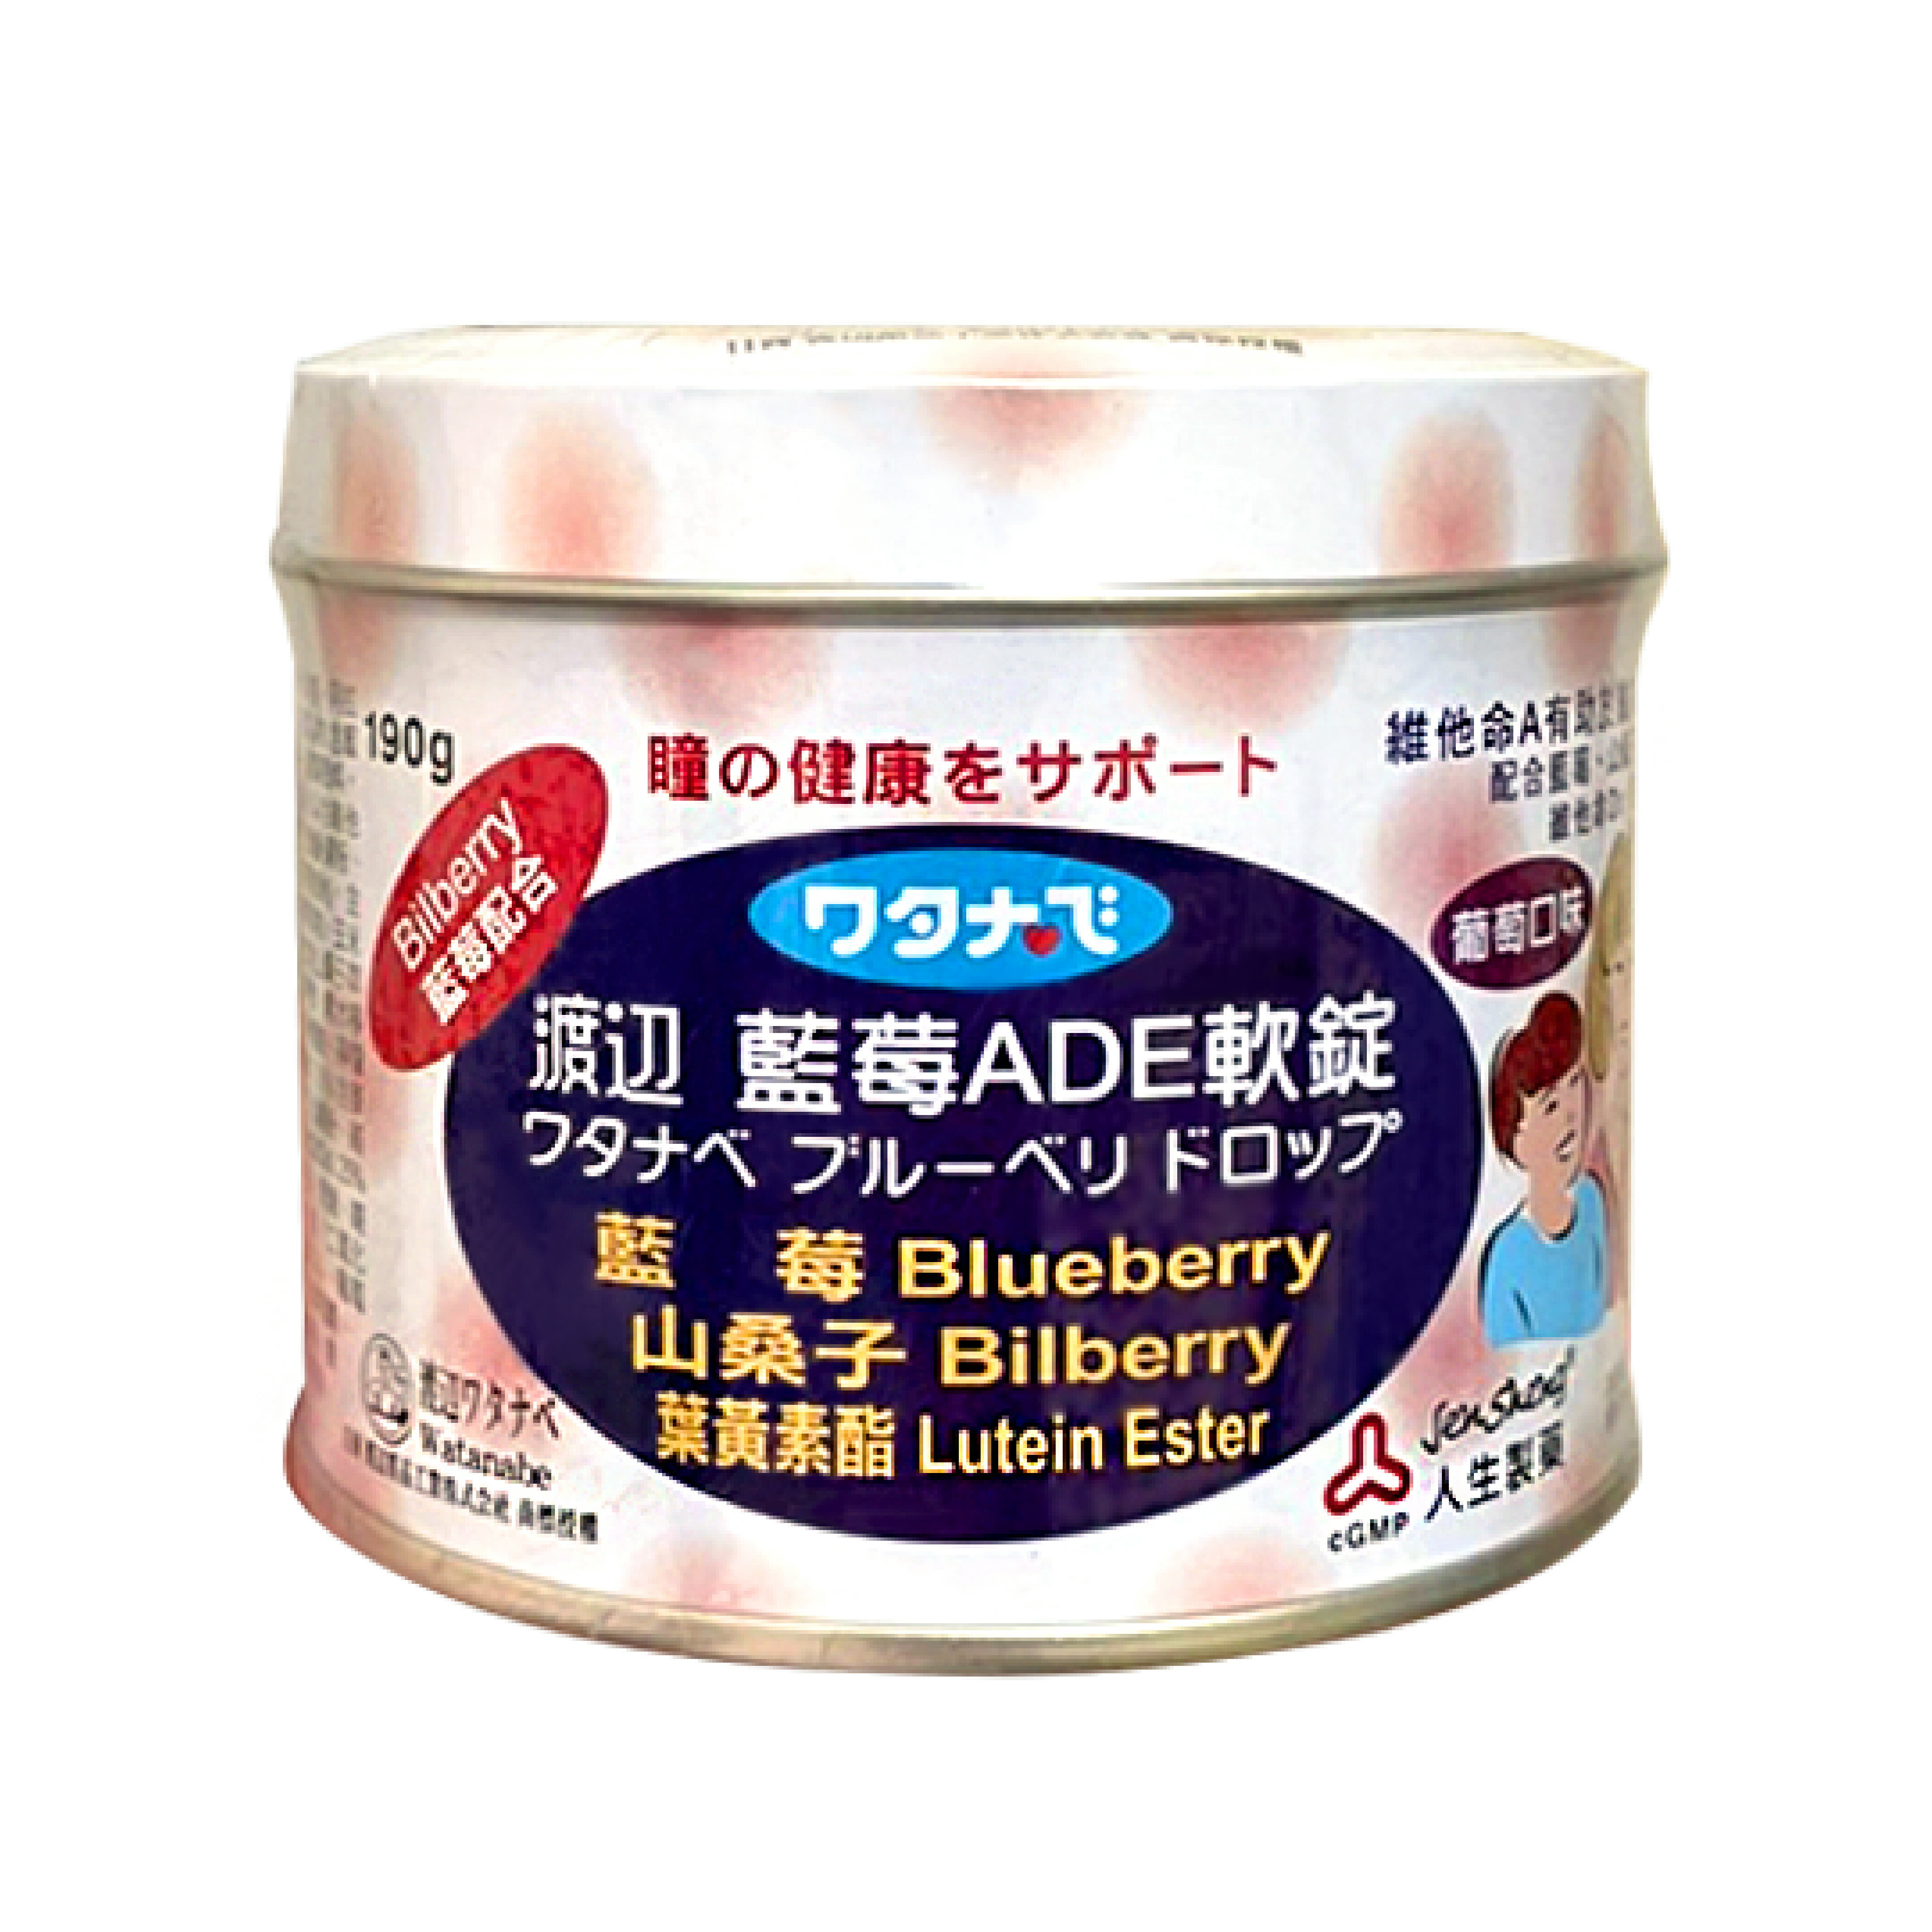 渡邊 藍莓 ADE 甘油 軟錠 山桑子 人生製藥